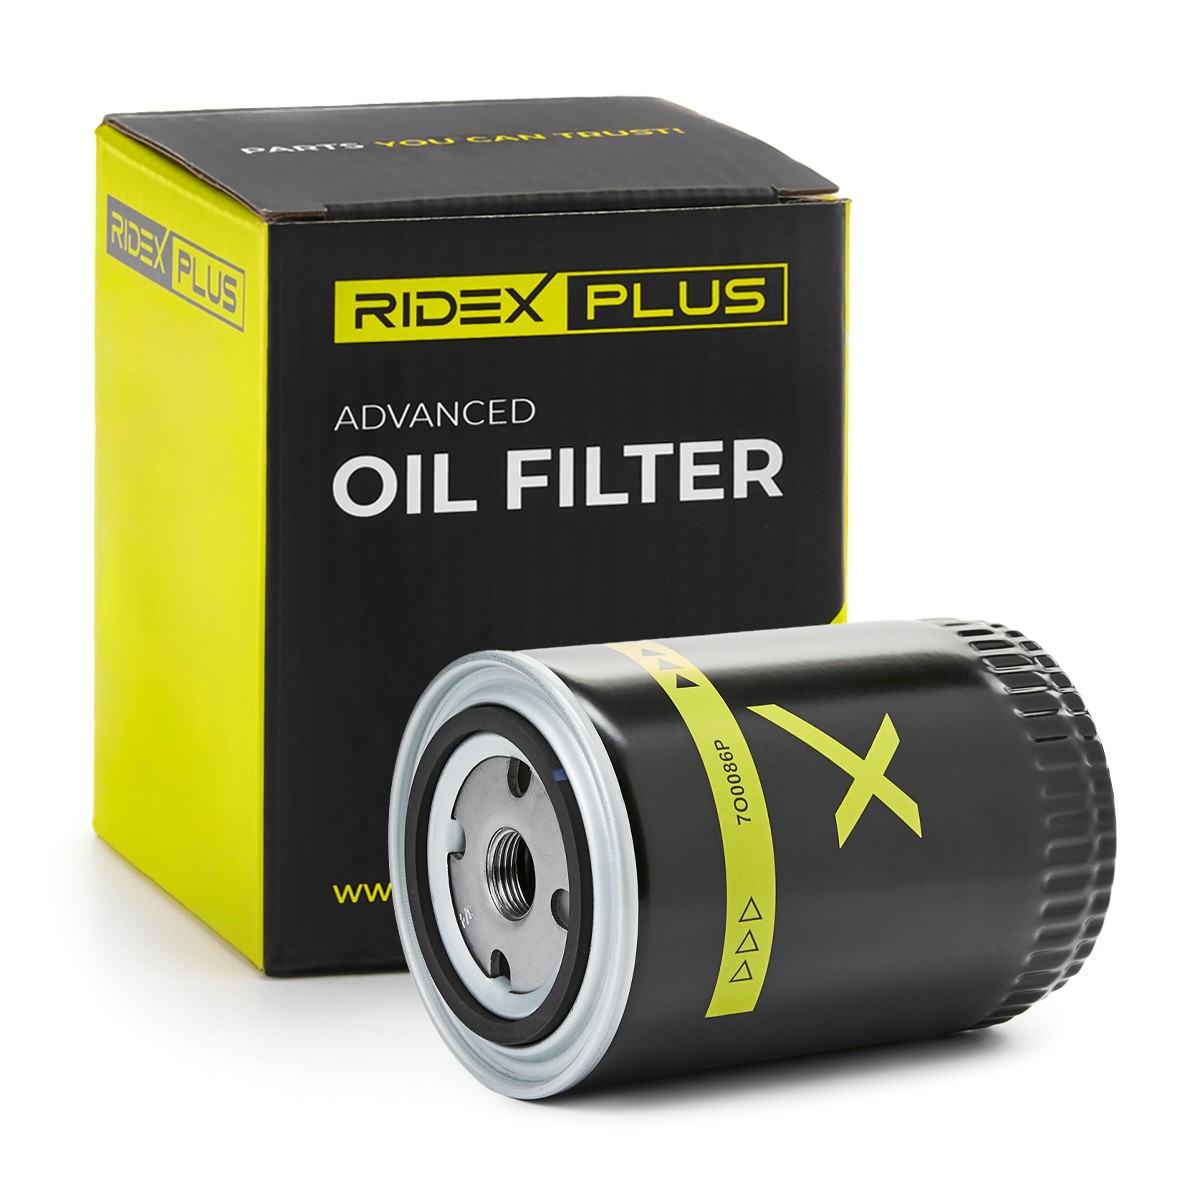 RIDEX PLUS 7O0086P Oil filter 2555 929